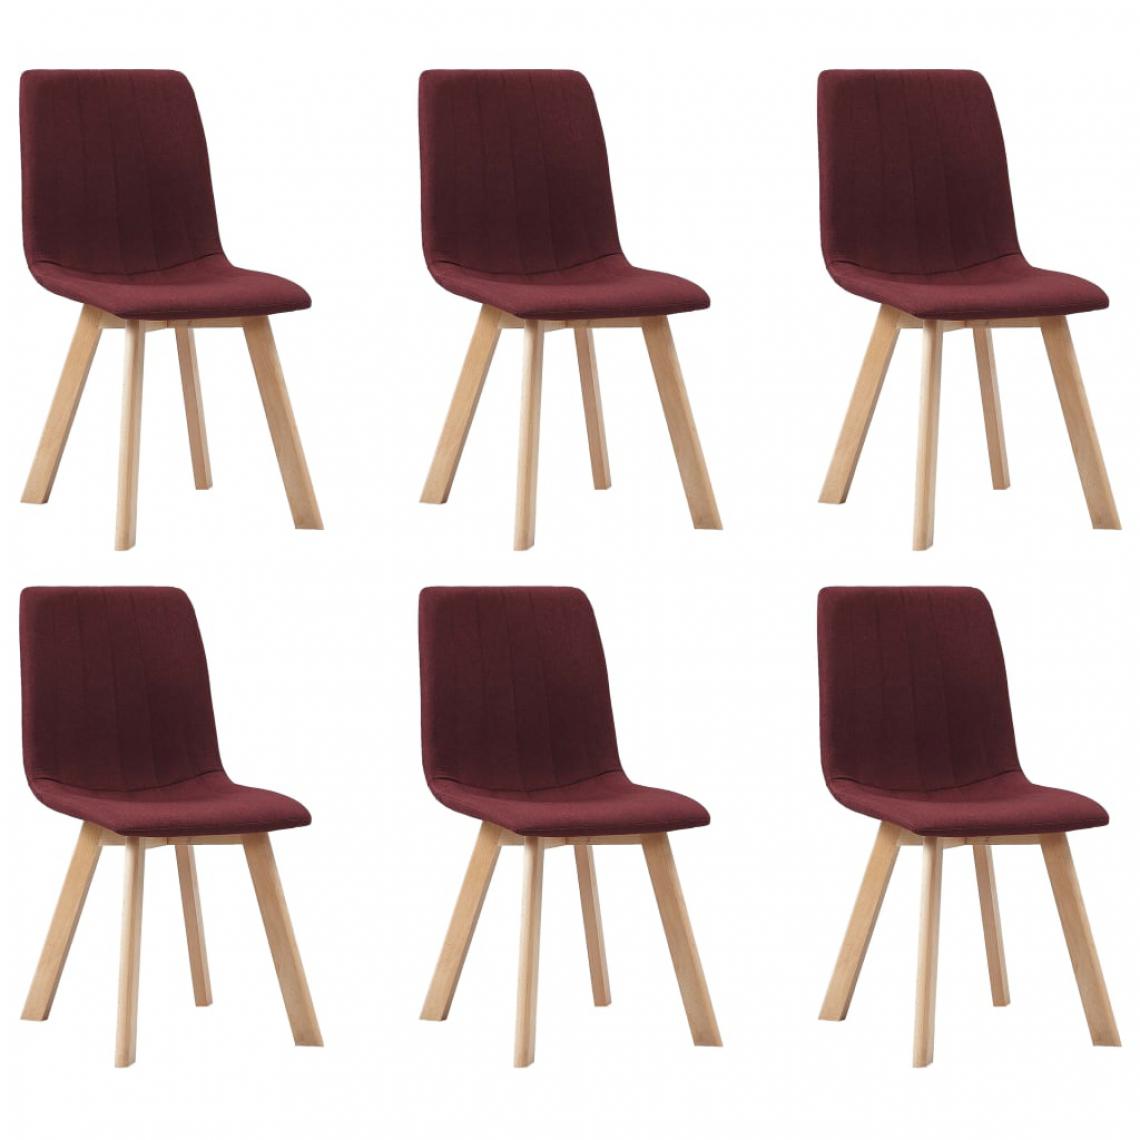 Icaverne - Moderne Fauteuils et chaises Conakry Chaises de salle à manger 6 pcs Rouge bordeaux Tissu - Chaises